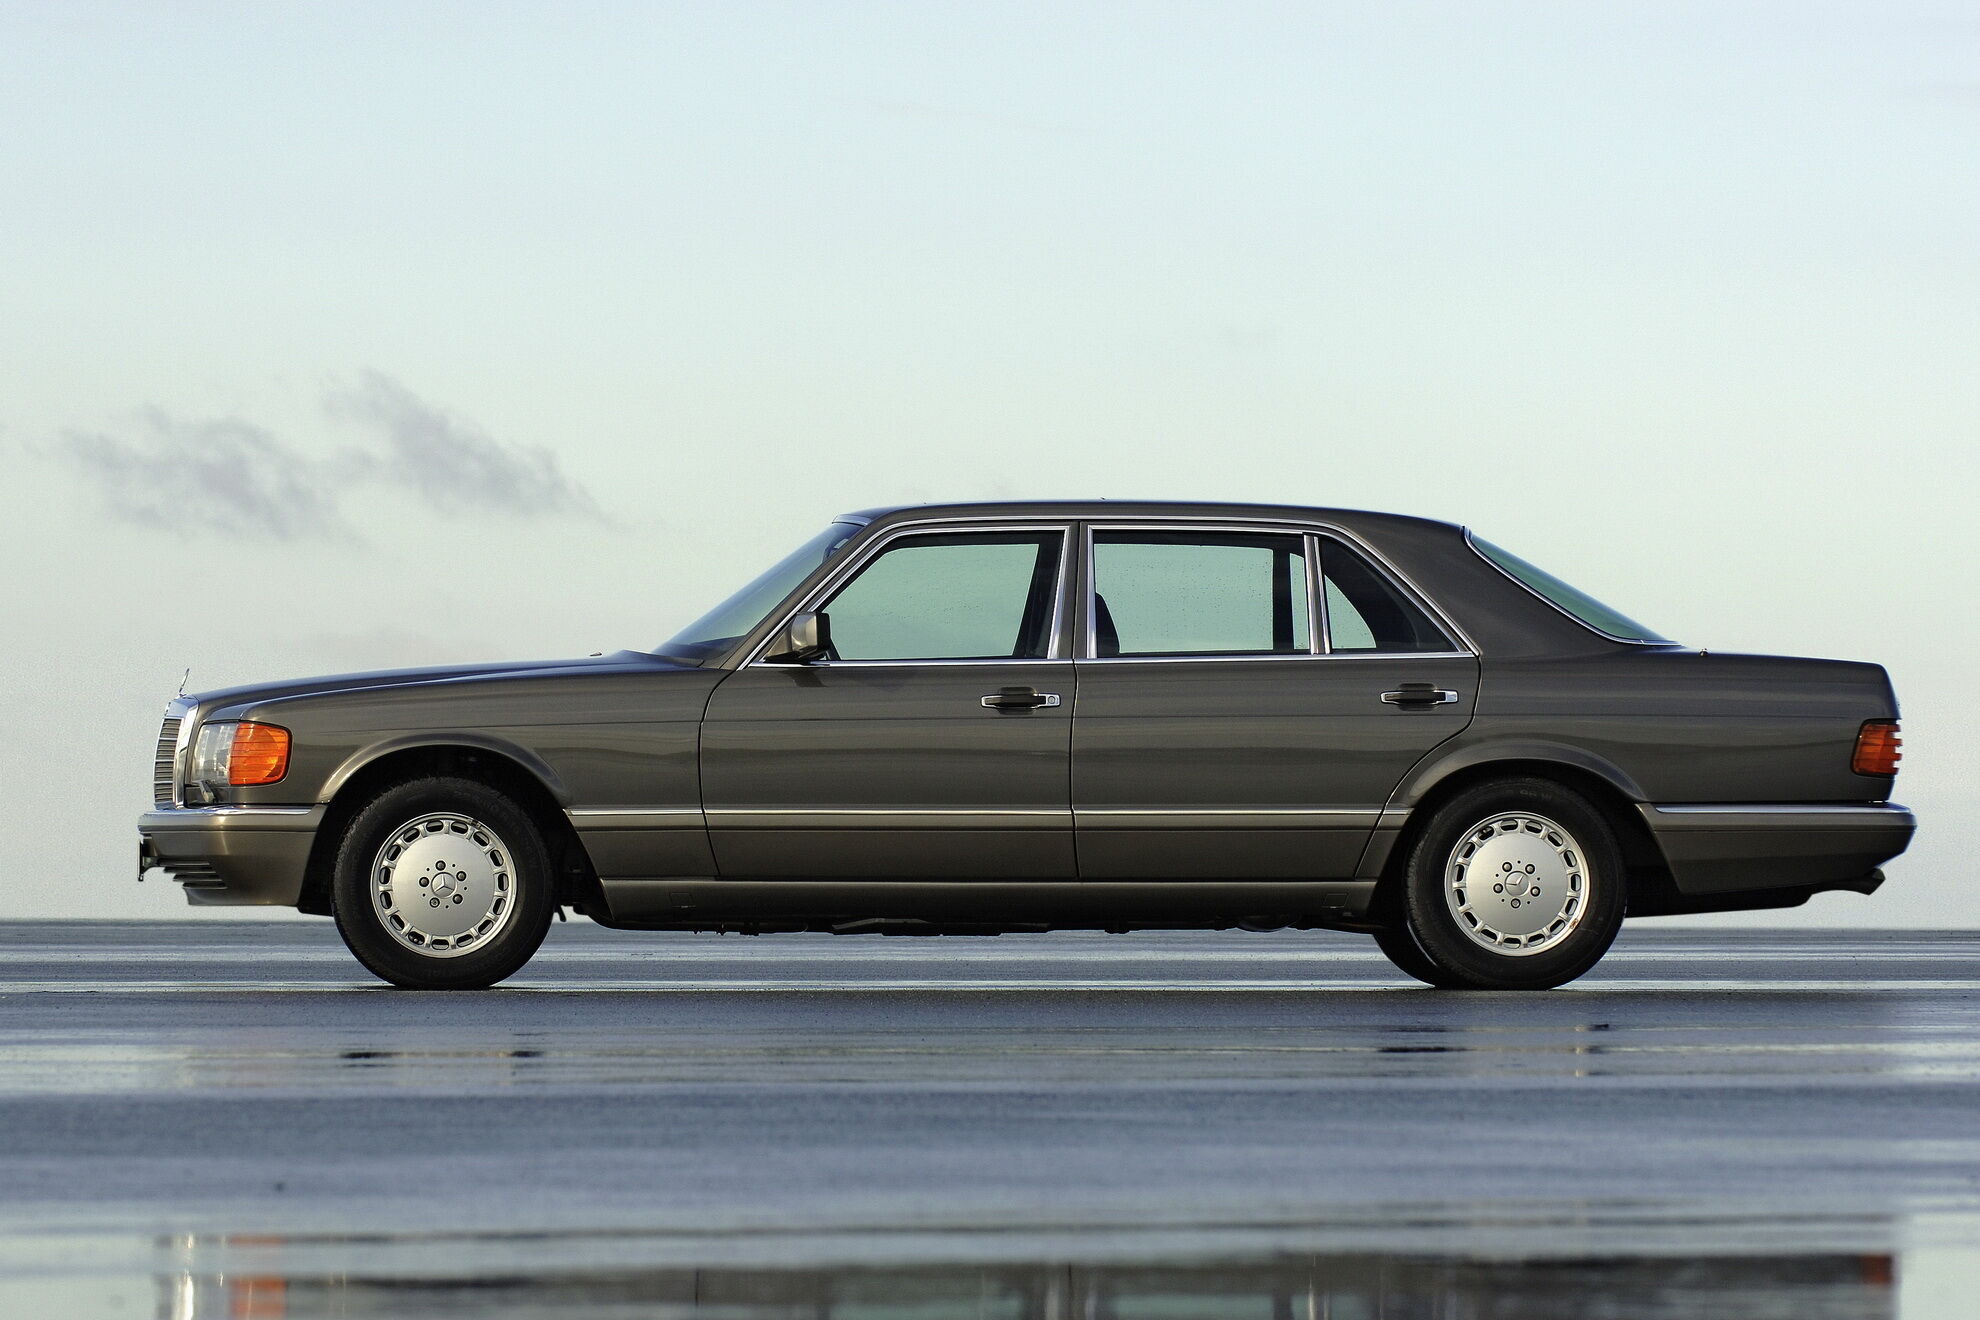 Mercedes-Benz S-Class (W126) в декабре 1980 года стал первім серийнім автомобилем в мире с подушкой безопасности и преднатяжителями ремней.